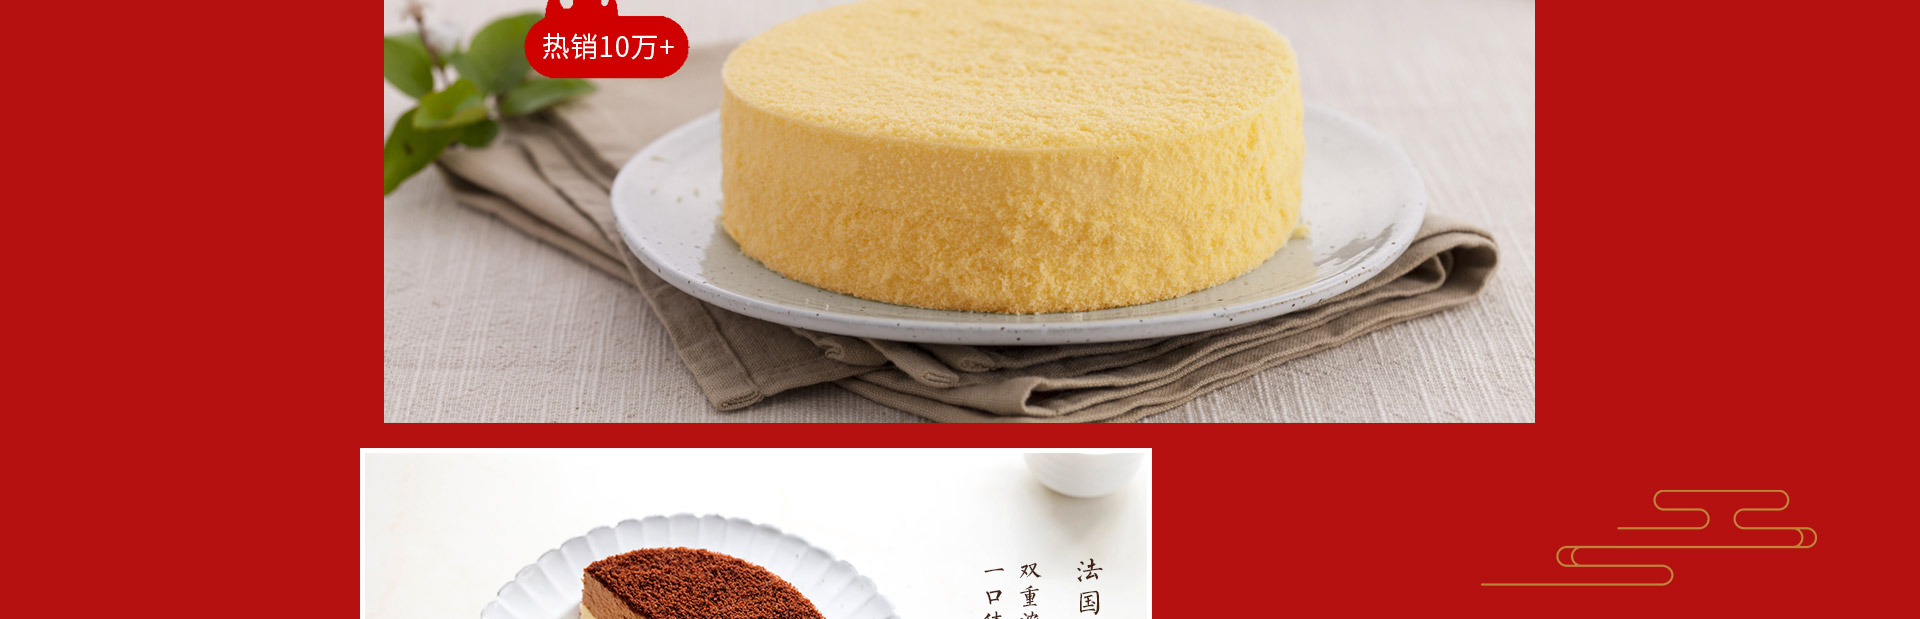 北海道|双层芝士蛋糕